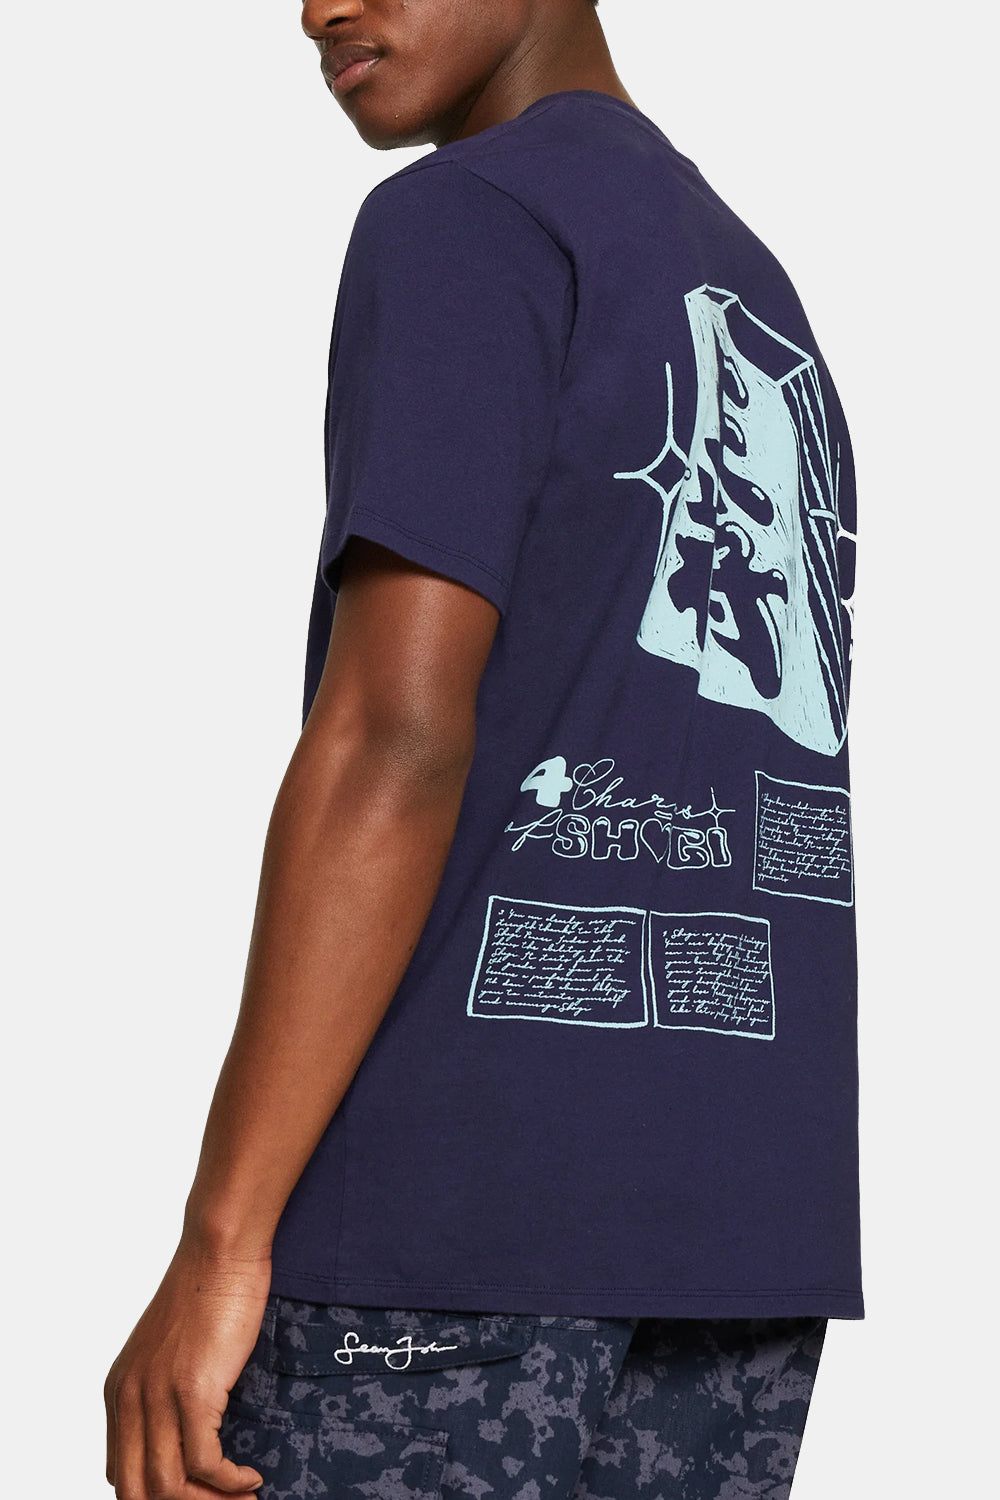 T-shirt japonais Edwin Sun Supply (mer de Béring)